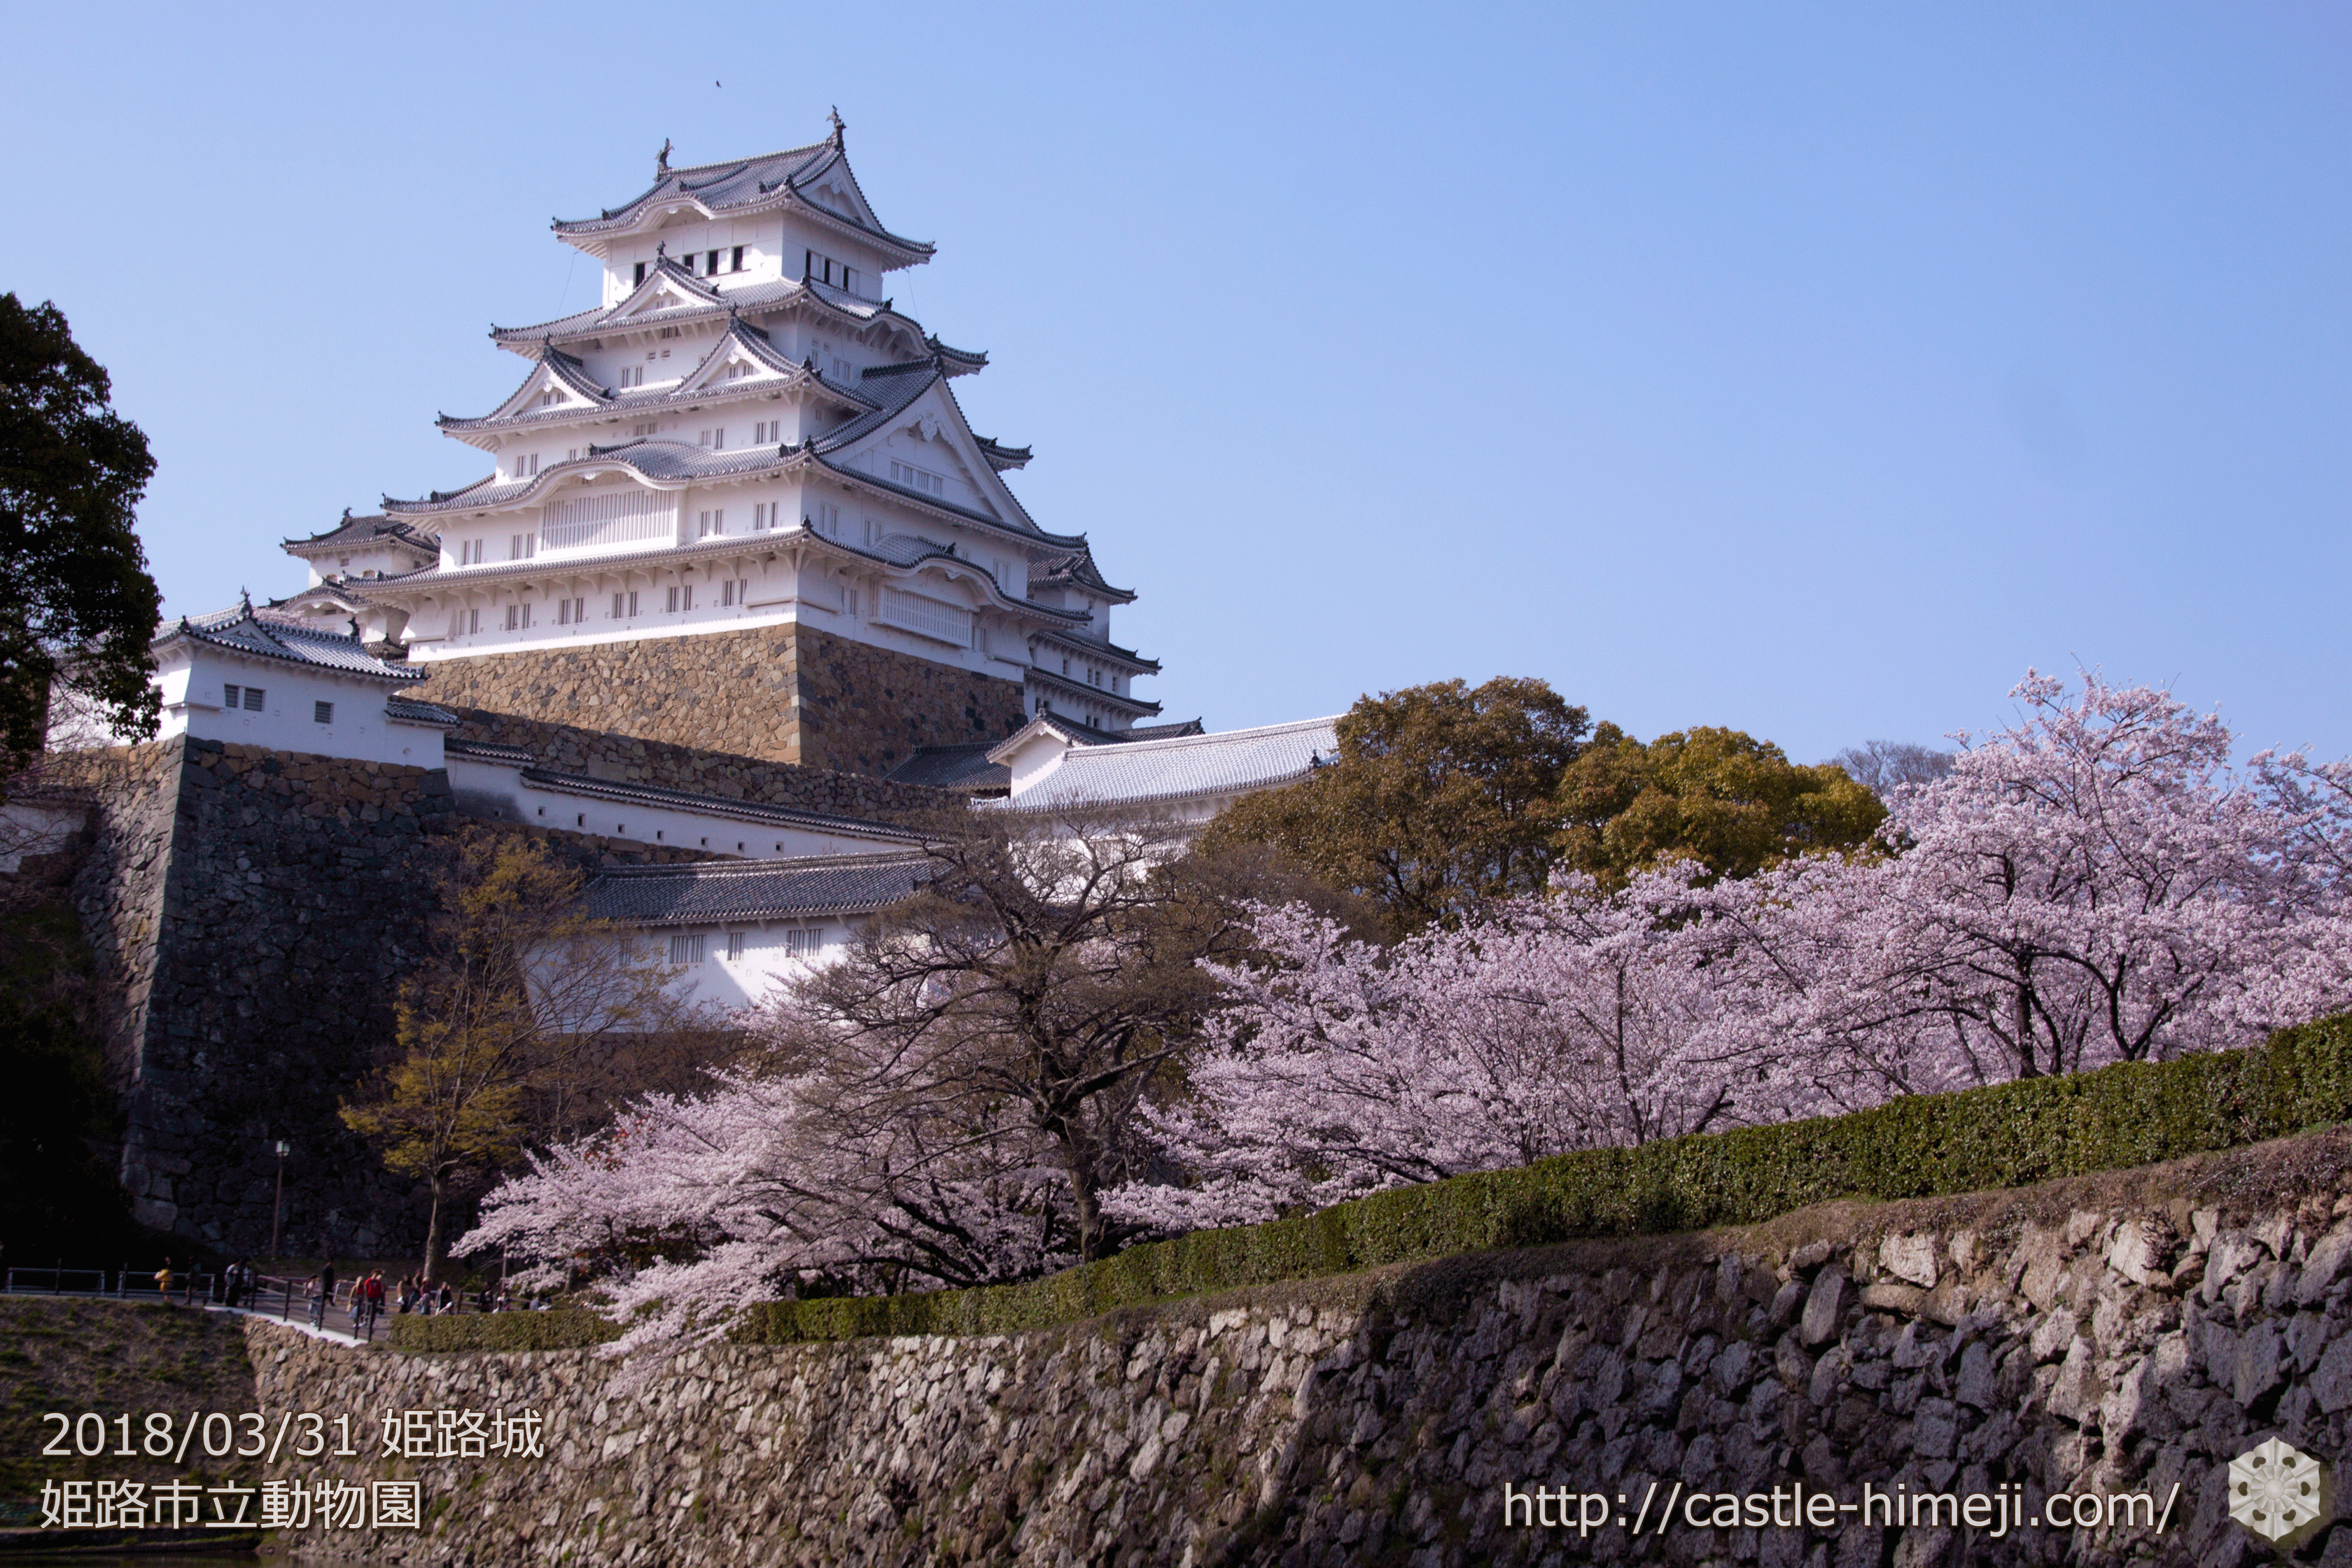 桜満開 人満来 18 3 31の姫路城の桜速報 開花 混雑状況 姫路城観光おすすめ 見どころ案内